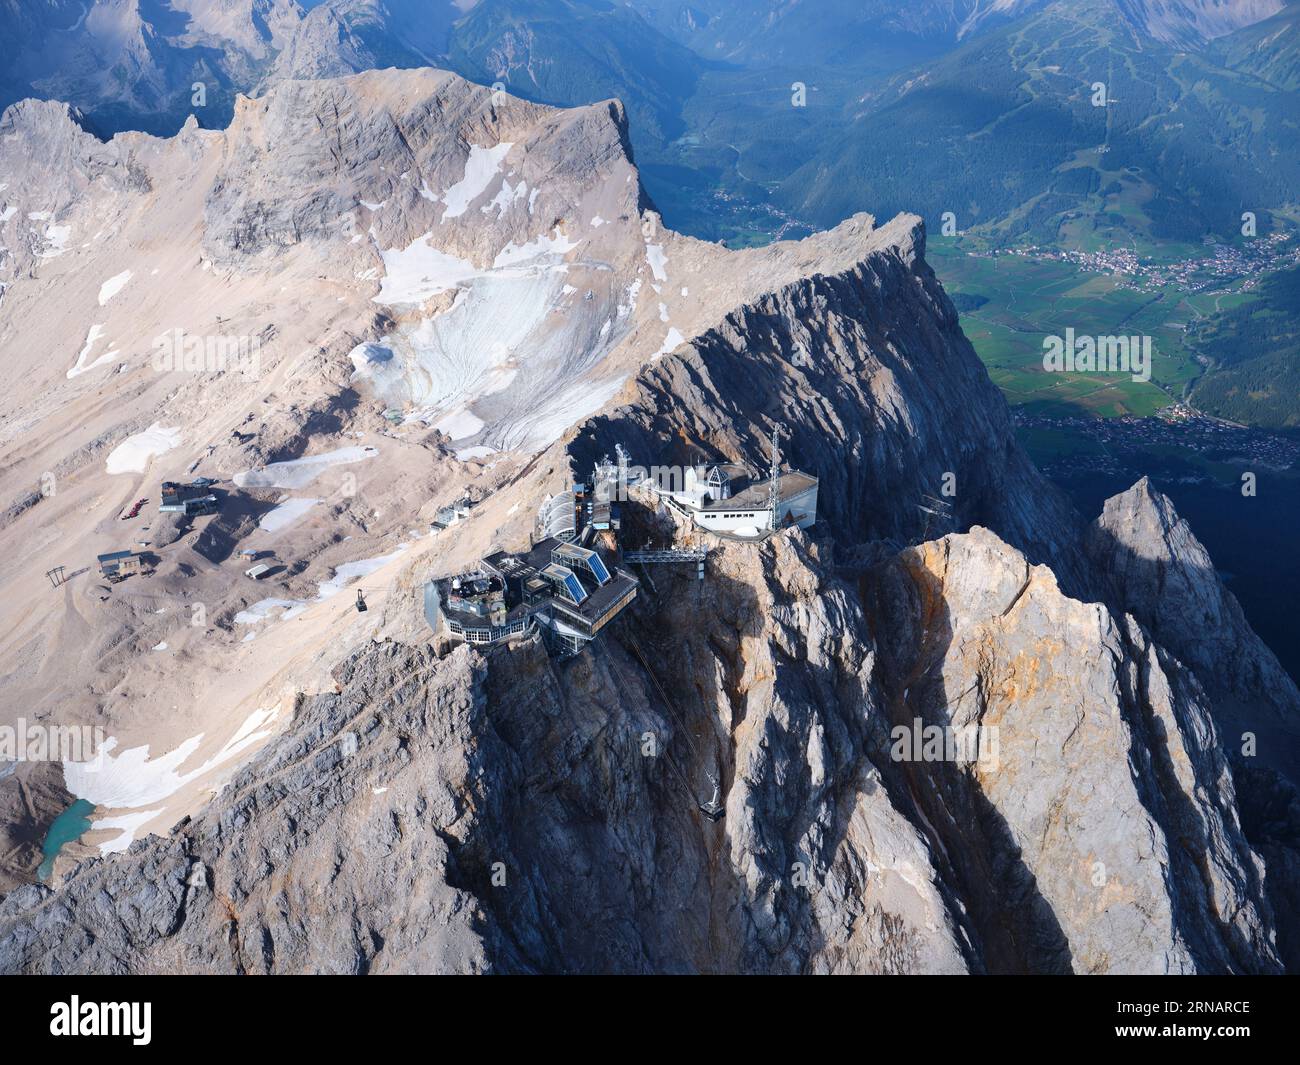 VISTA AÉREA. Cumbre del Zugspitze, a 2962 metros sobre el nivel del mar, es la montaña más alta de Alemania. Garmisch-Partenkirchen, Baviera, Alemania. Foto de stock